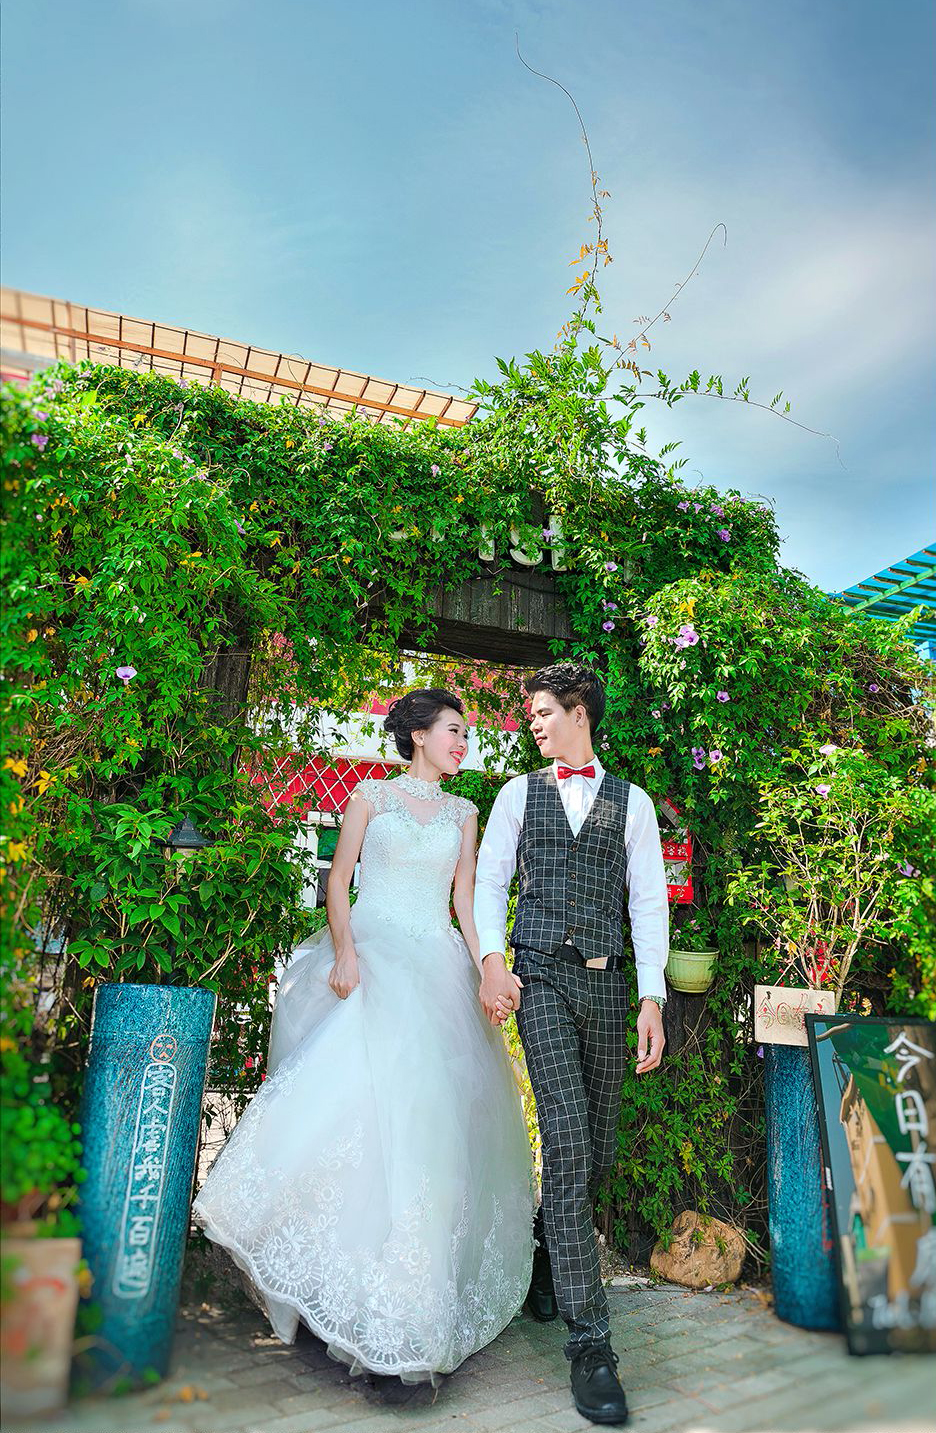 2017年8月广州结婚照,清远婚纱照,婚纱照图片